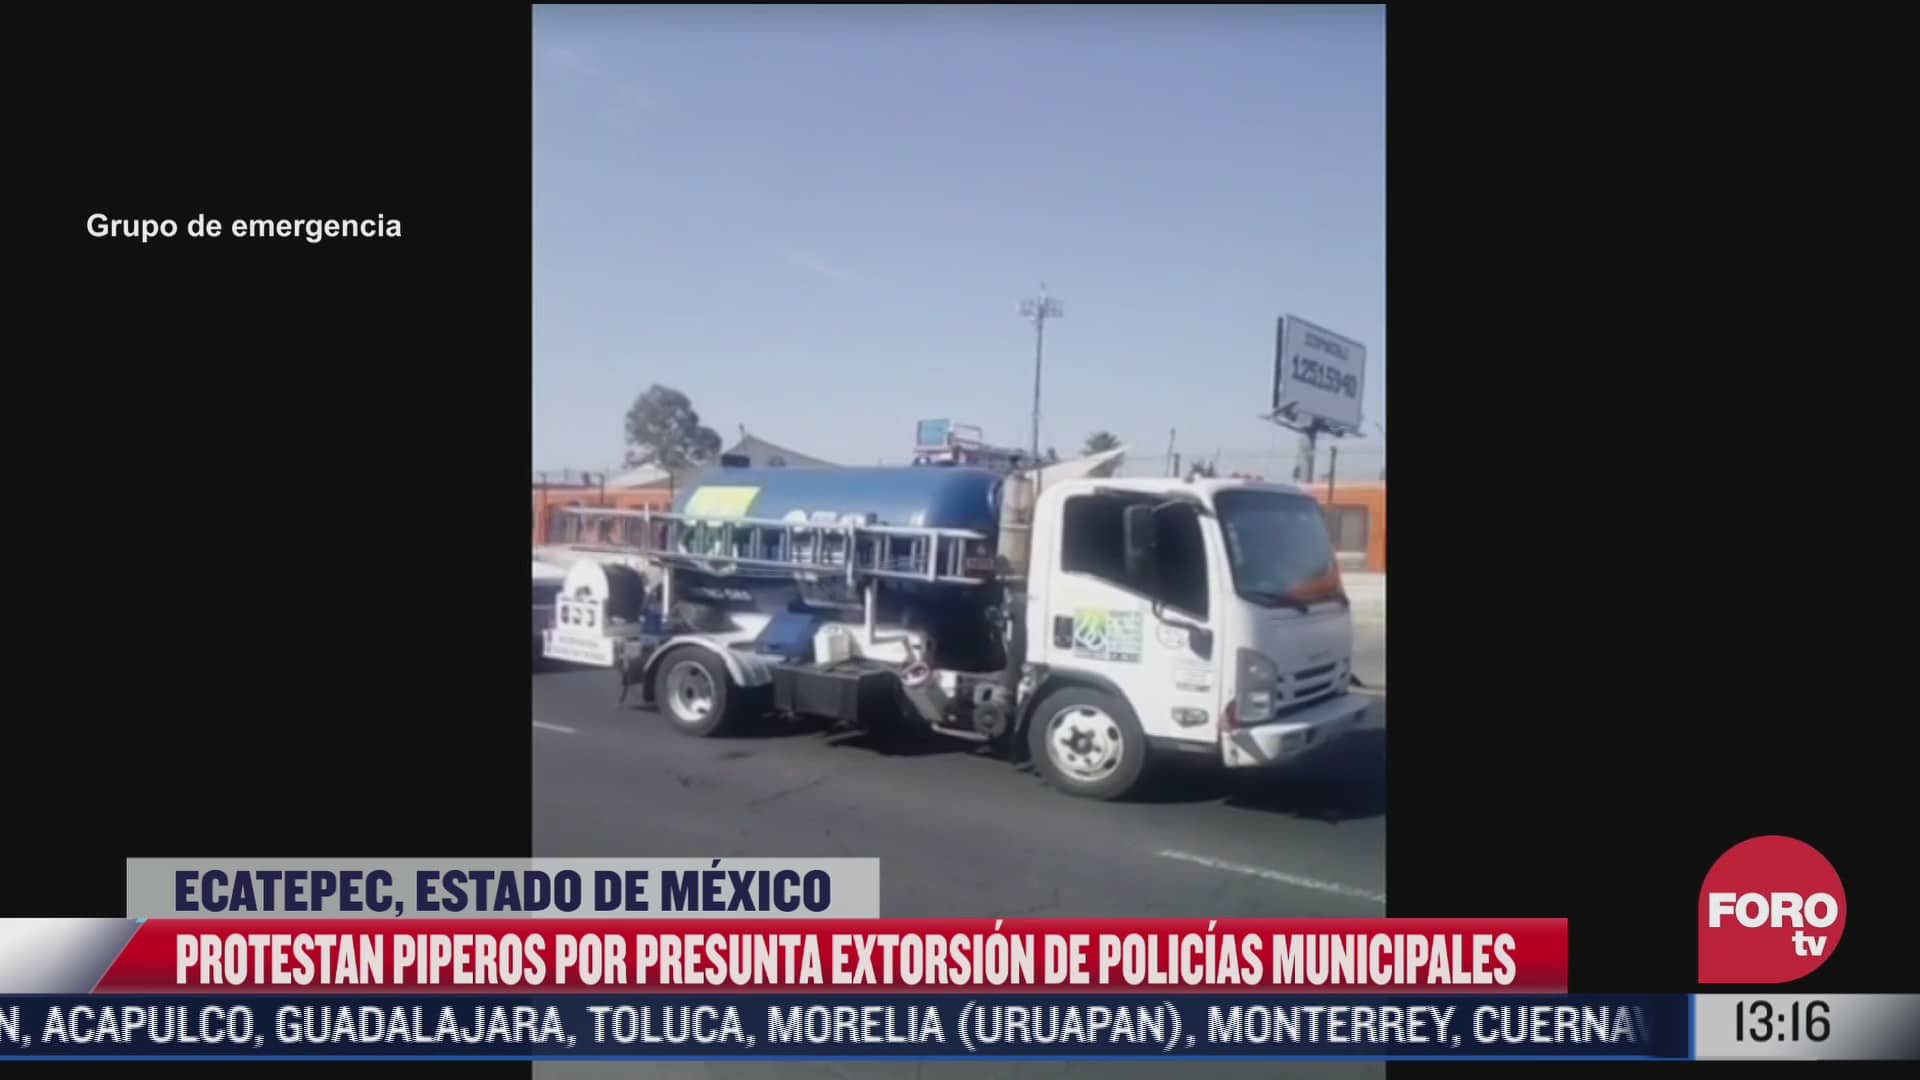 protestan piperos por extorsion de policias en ecatepec